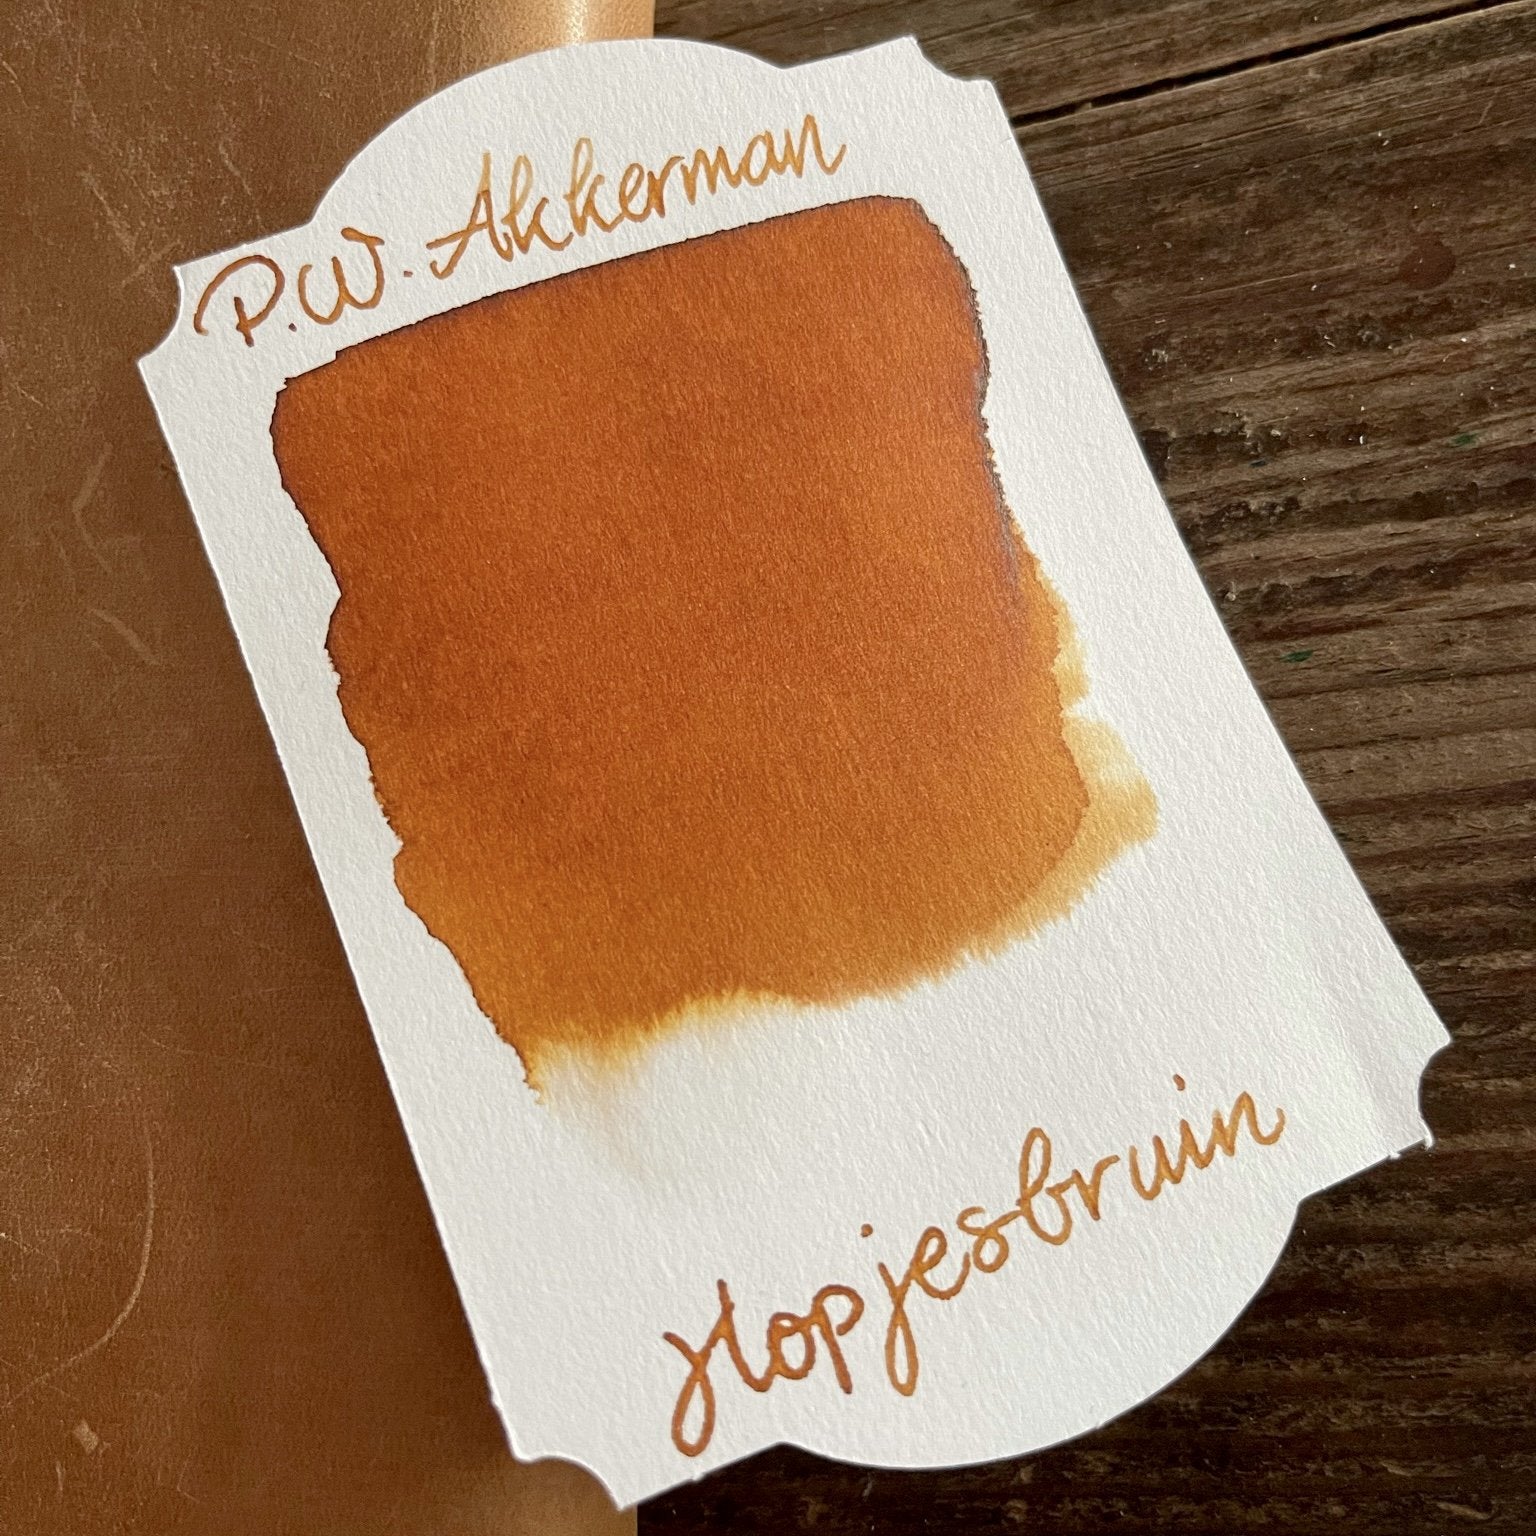 Akkerman Hopjesbruin Ink